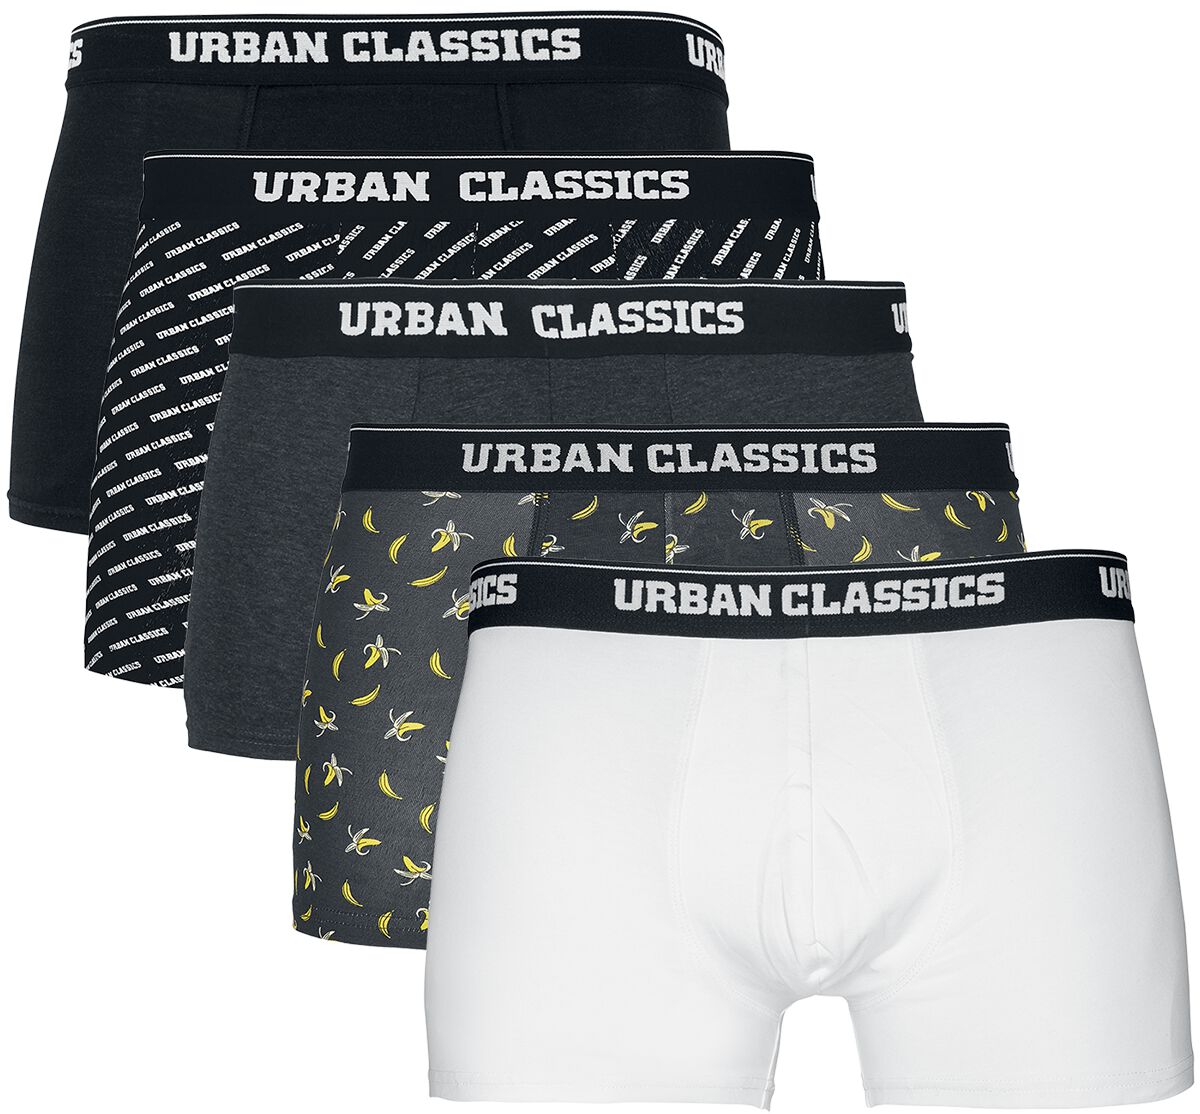 Urban Classics Boxershort-Set - Boxer Shorts 5-Pack - S bis XXL - für Männer - Größe L - schwarz/grau/weiß von Urban Classics